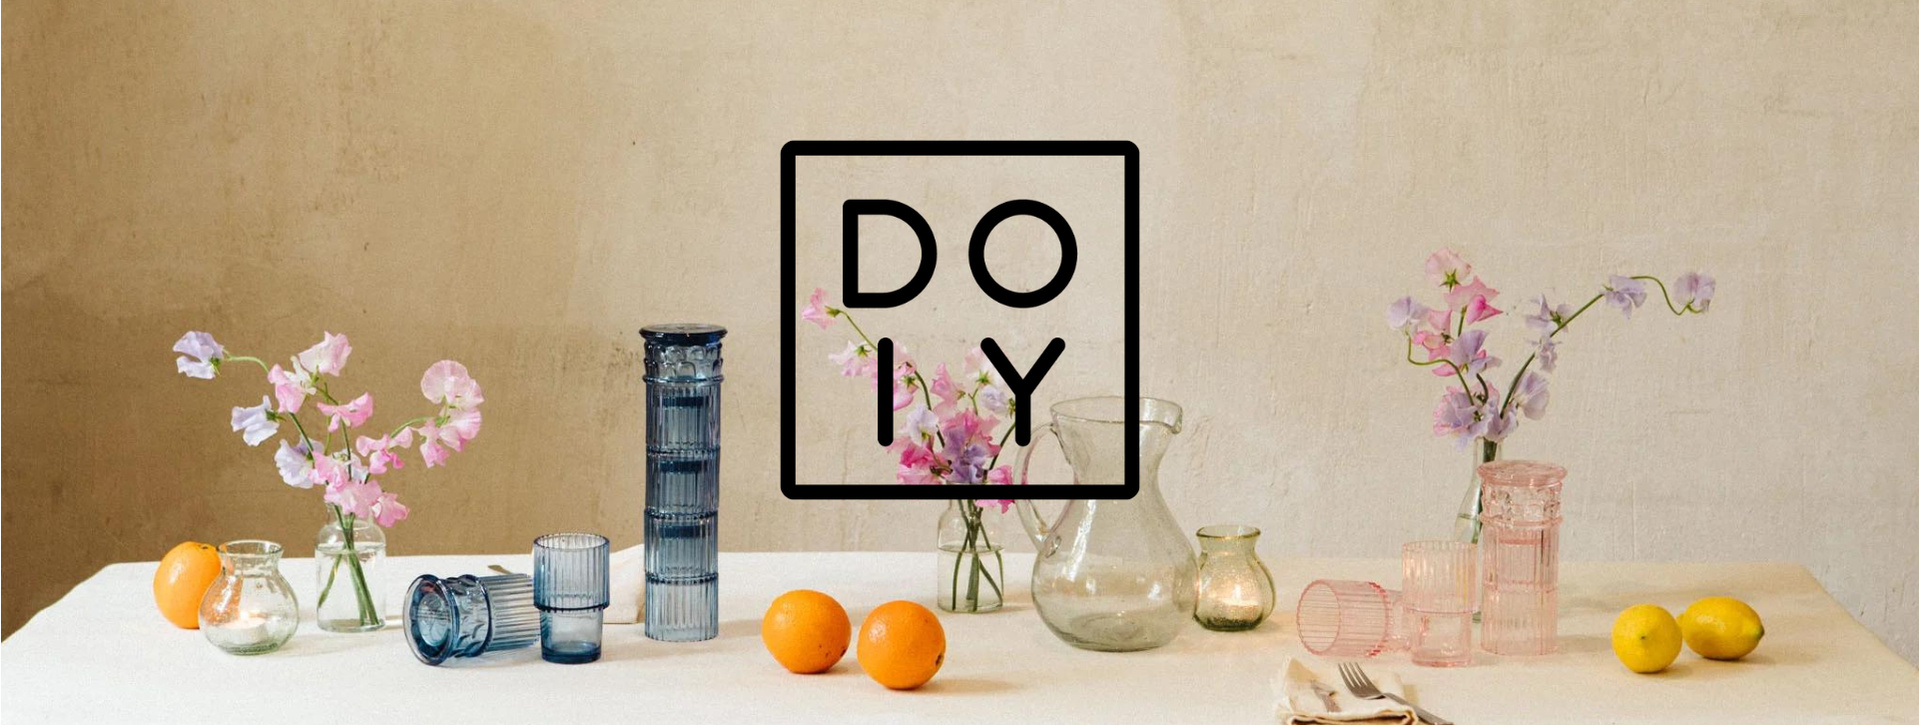 DOIY - Φρέσκο Design για την διακόσμηση και τον εξοπλισμό του σπιτιού σου